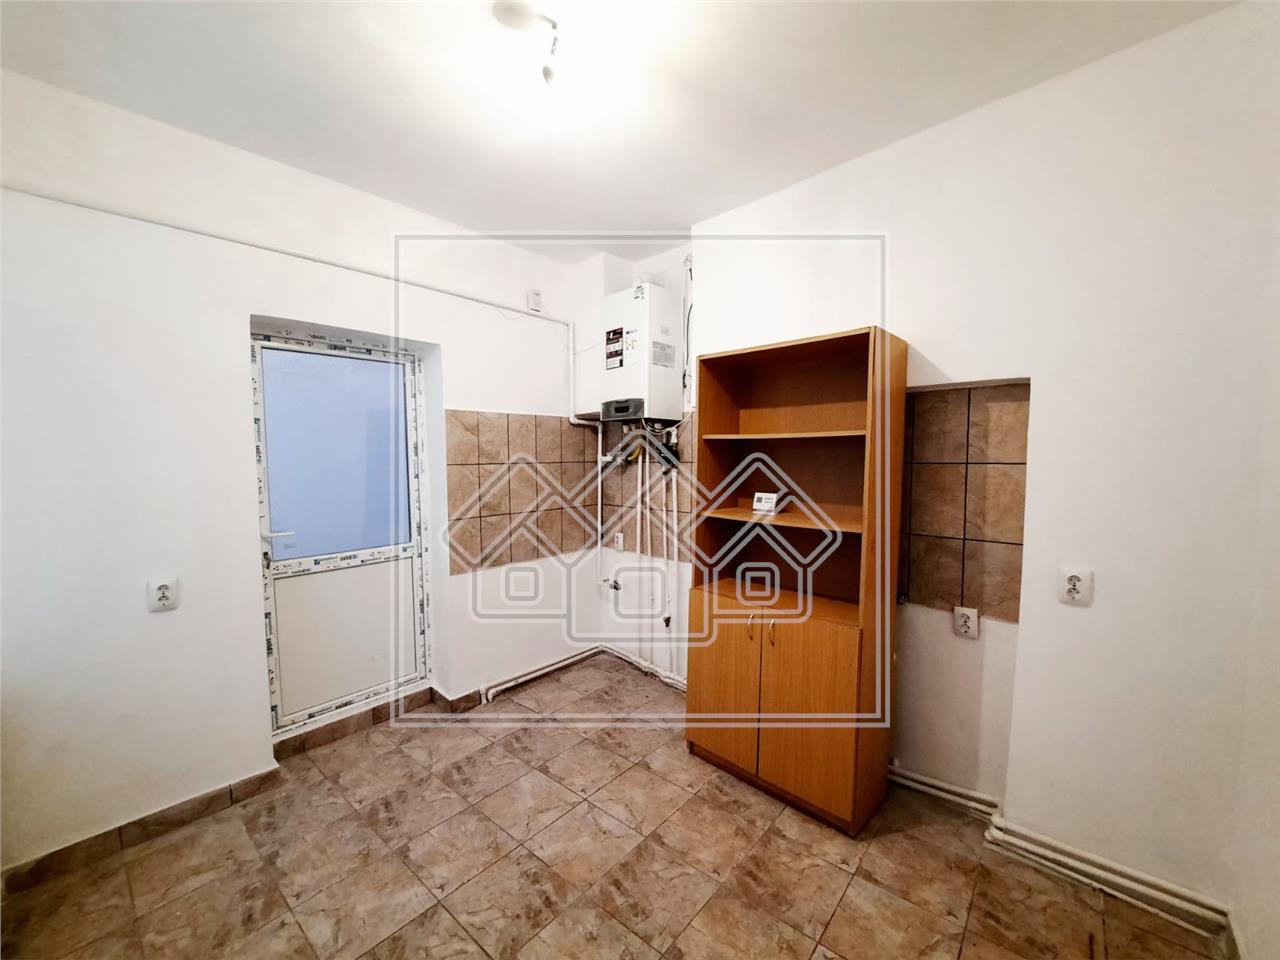 Wohnung zum Verkauf in Sibiu - ideale Investition - Bereich Ultracentr